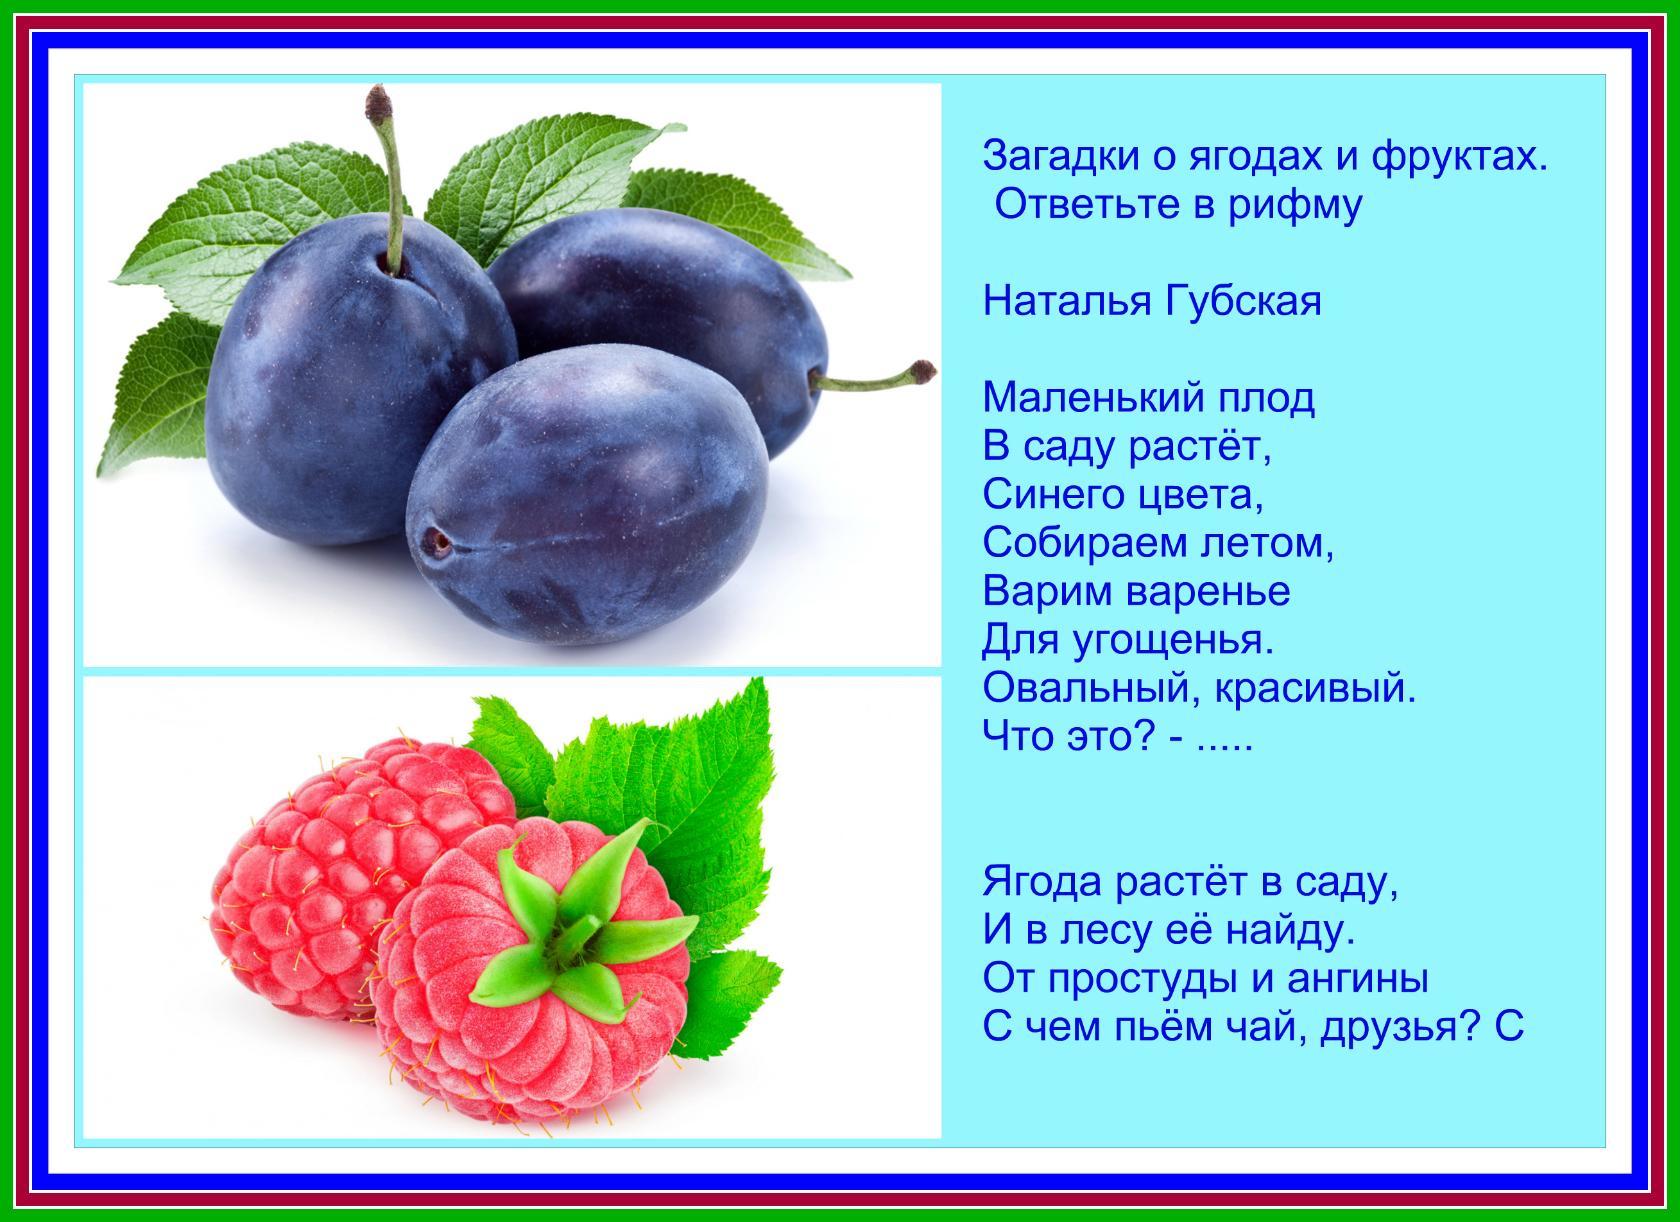 И овощ и ягода 4. Загадки про ягоды для детей. Загадка про ягодку для детей. Загадки про фрукты. Загадки про фрукты и ягоды.